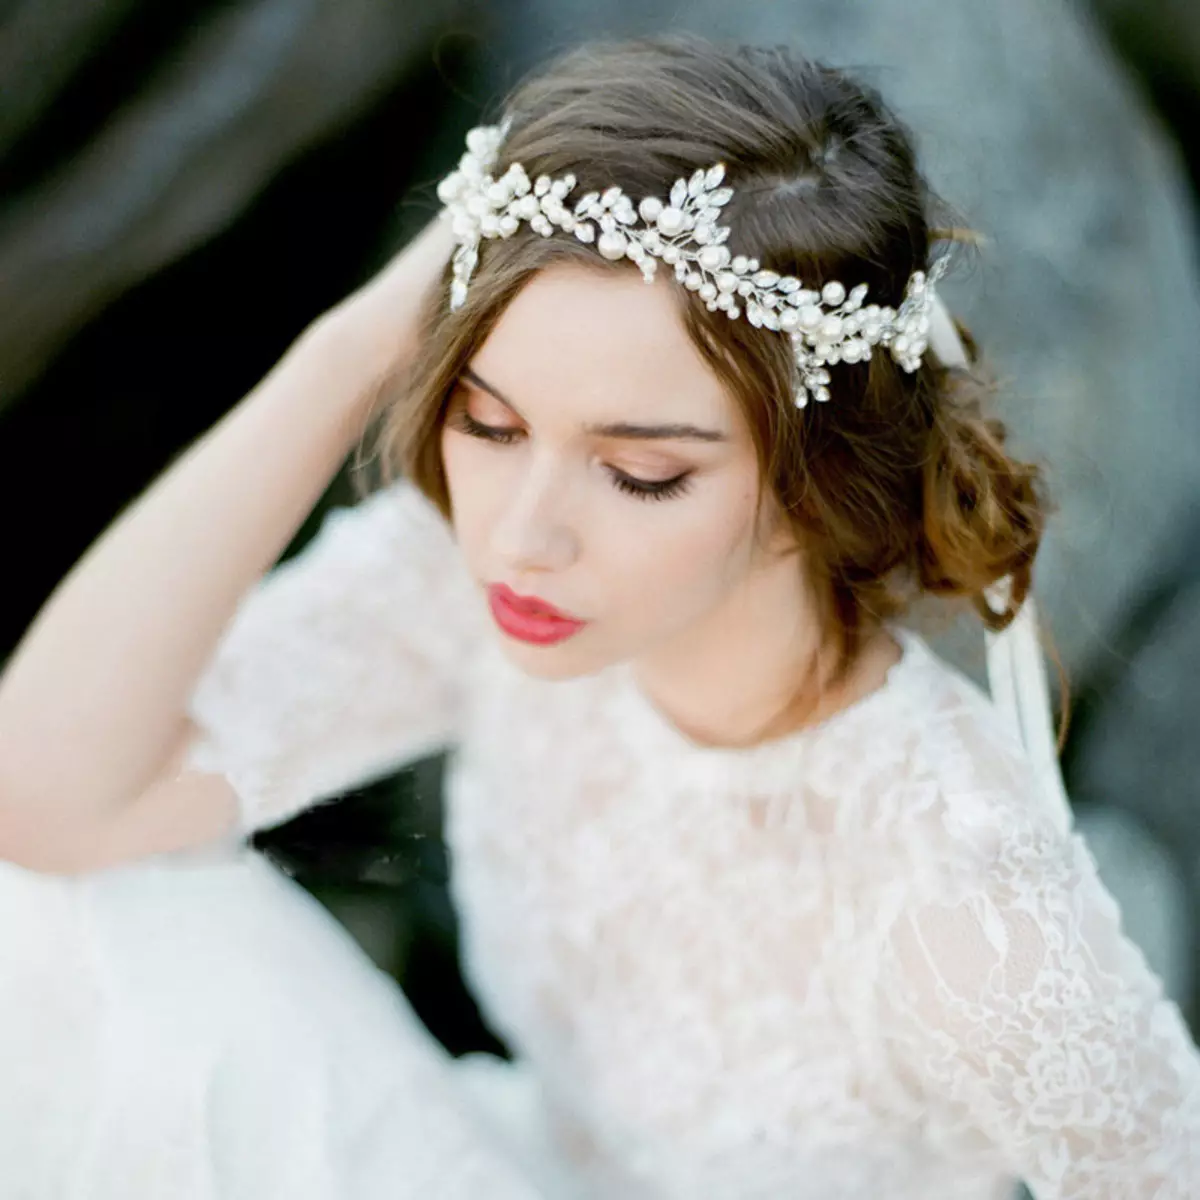 MARIAGE TIARA (61 photos): Modèles pour un mariage pour la mariée, images avec voile et avec une grille diadema pour cheveux avec des perles 15530_11